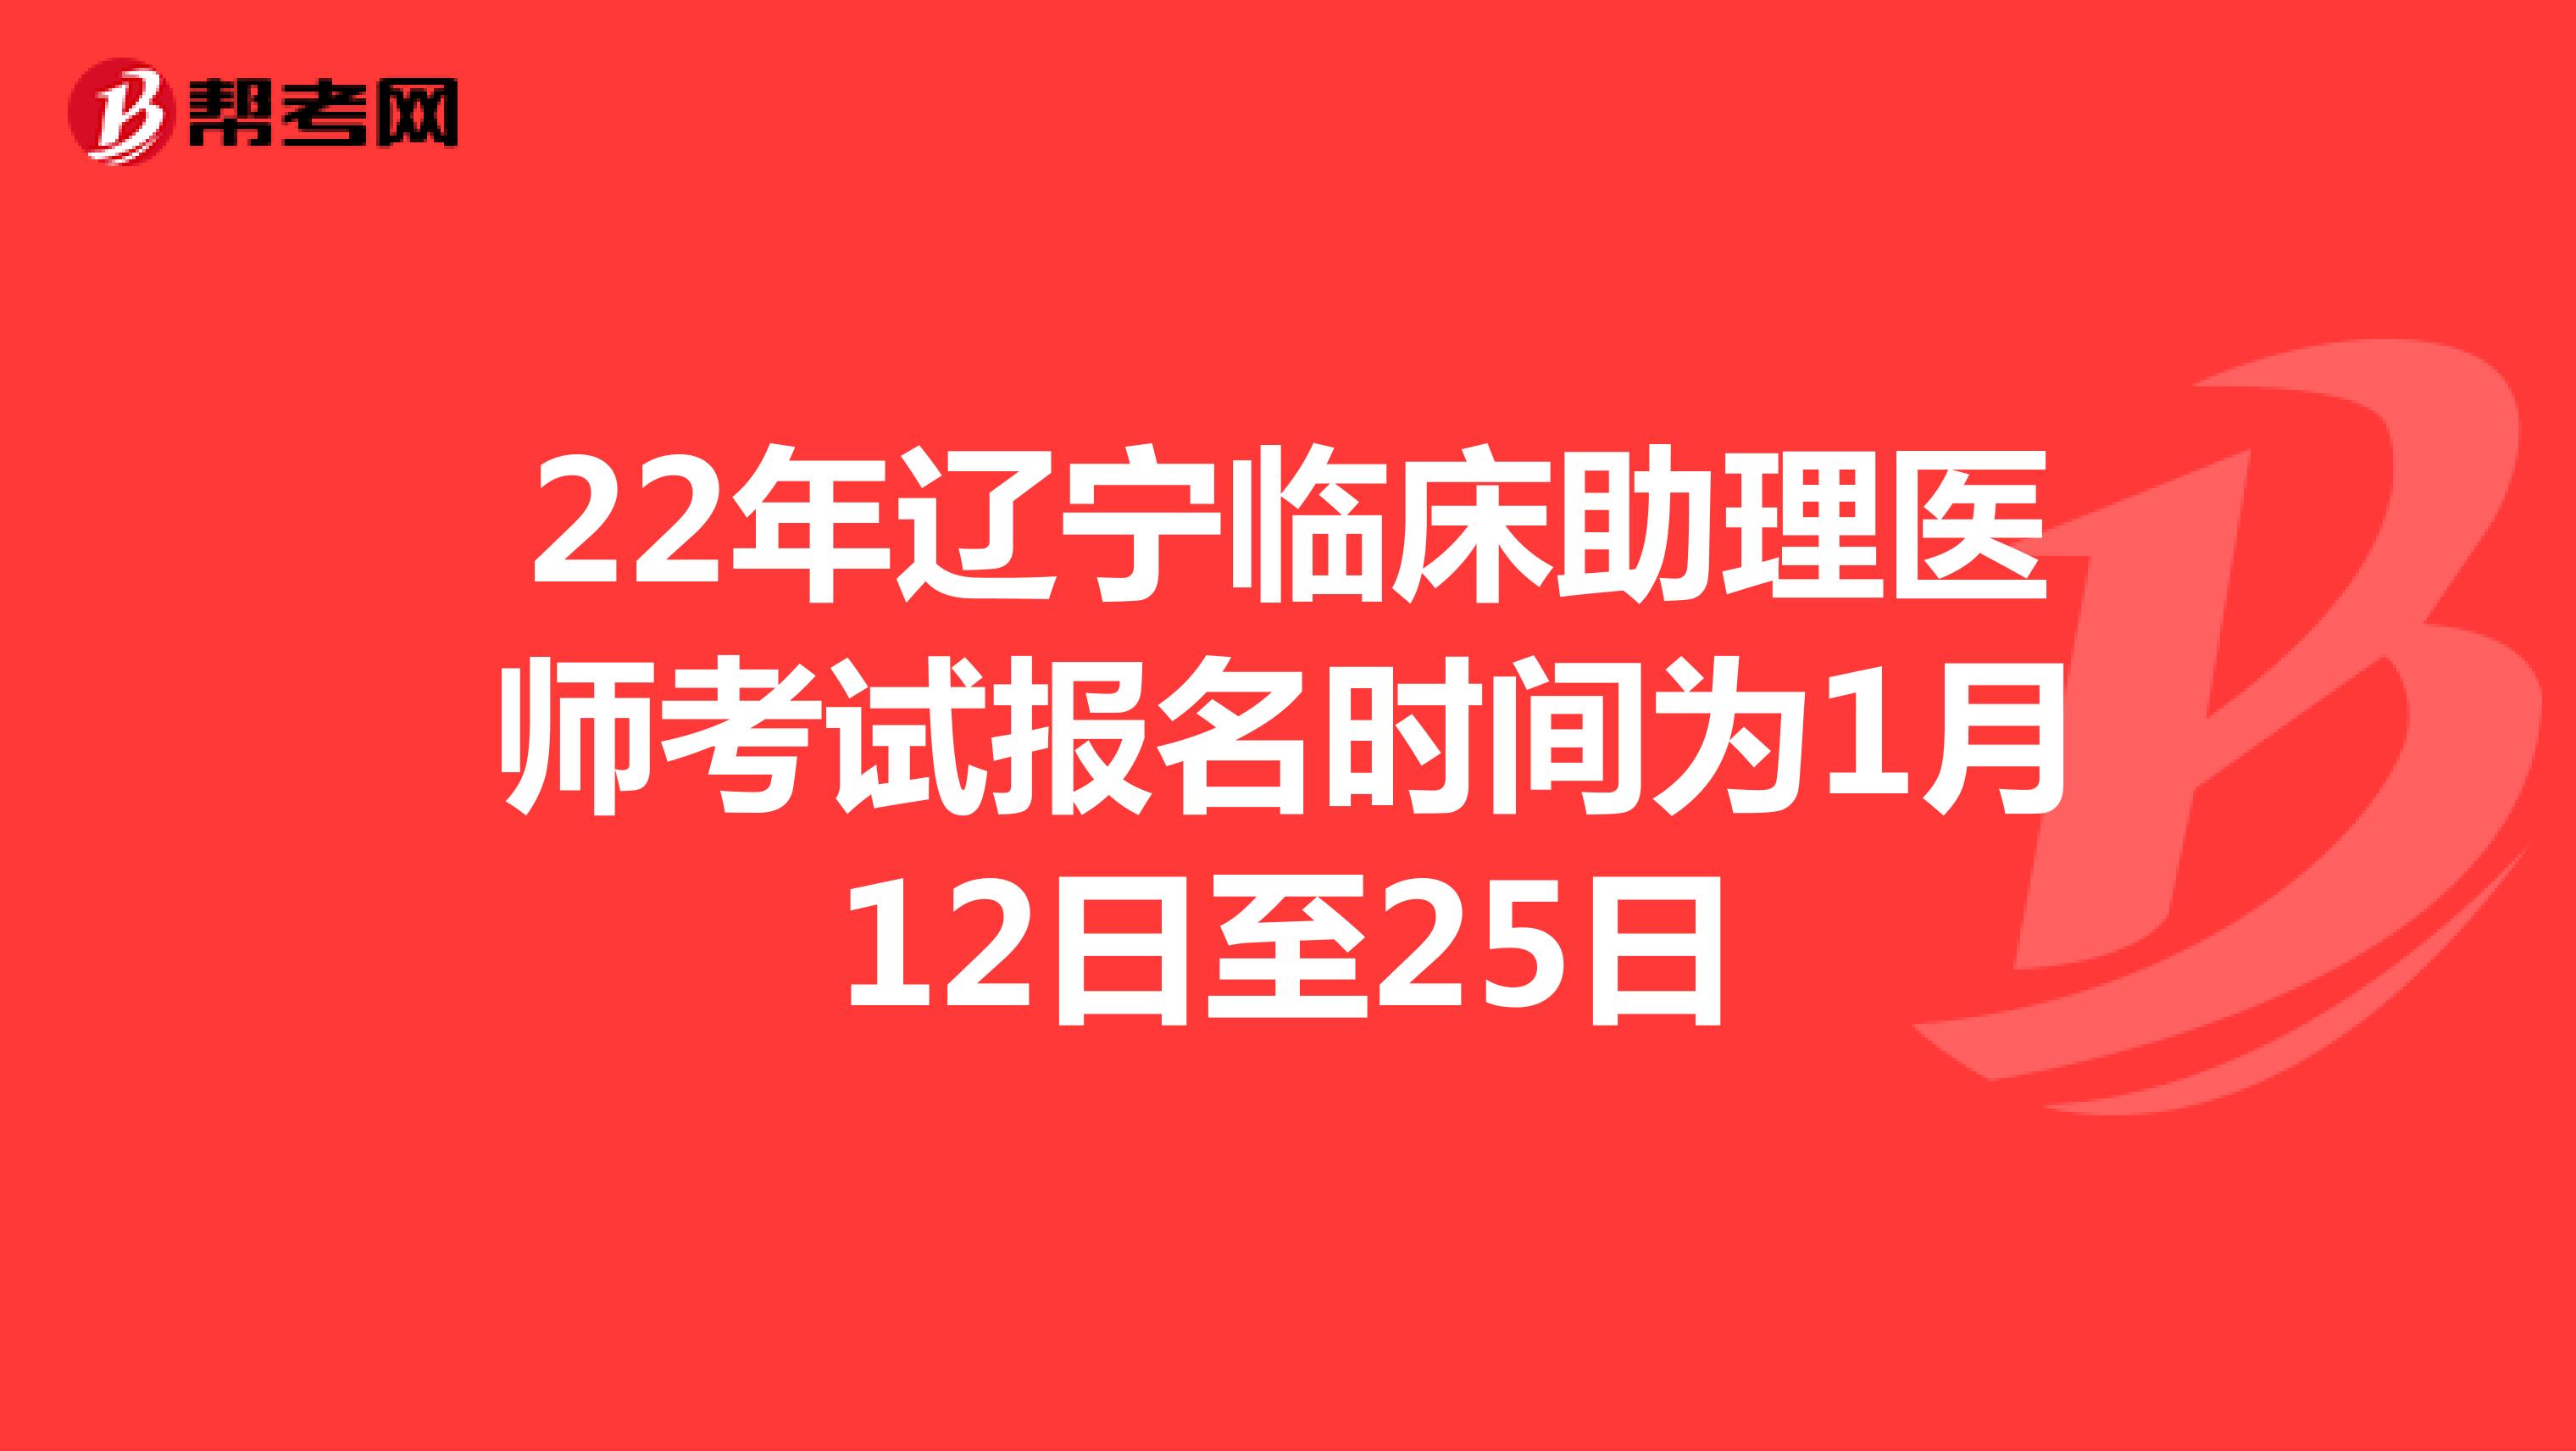 22年辽宁临床助理医师考试报名时间为1月12日至25日